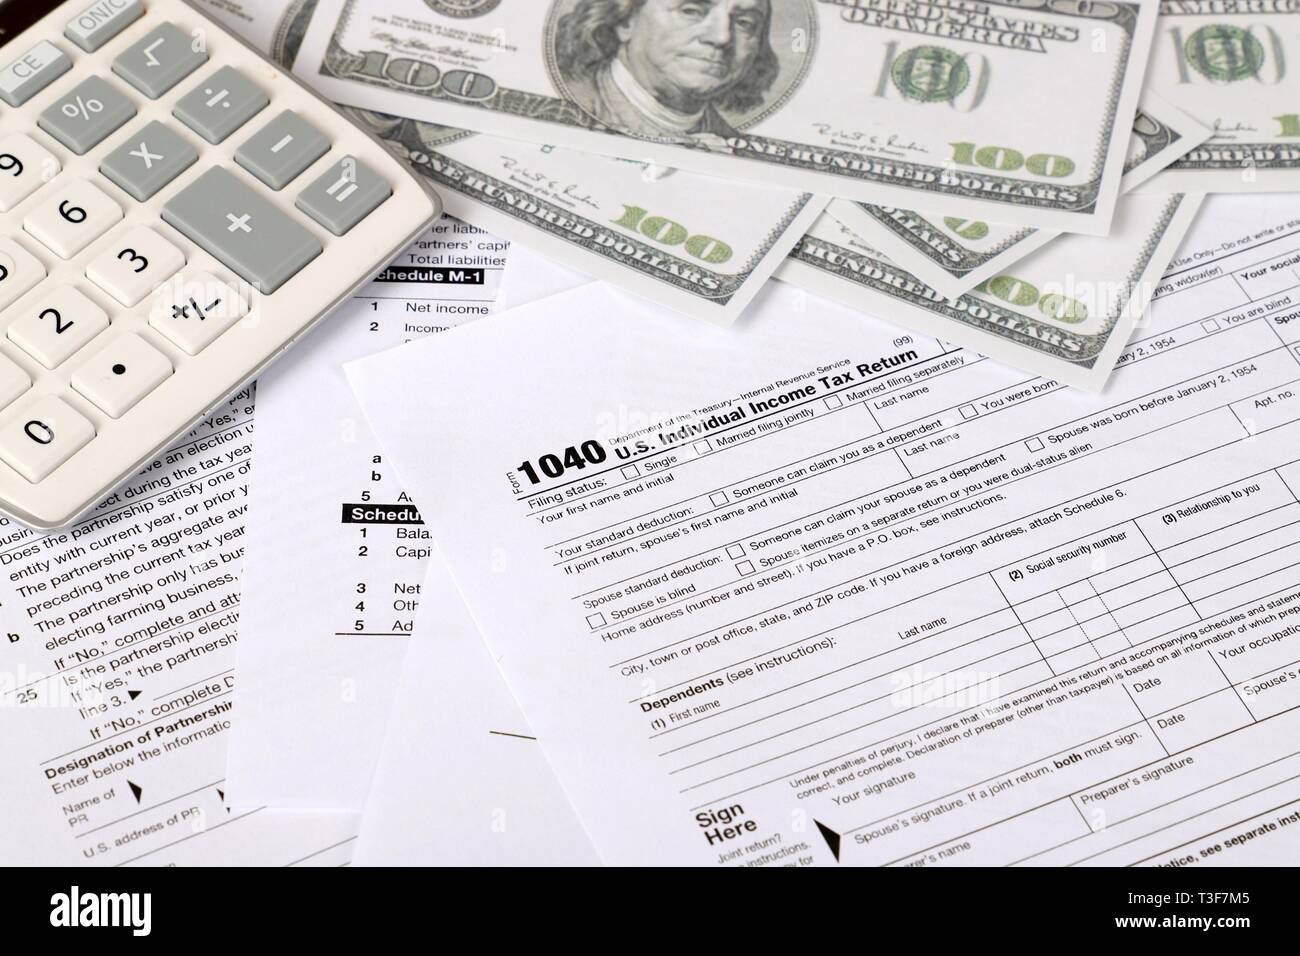 1040 forma fiscale - i singoli redditi forma 1040 si trova nei pressi di centinaia di fatture del dollaro e la calcolatrice su un tavolo Foto Stock